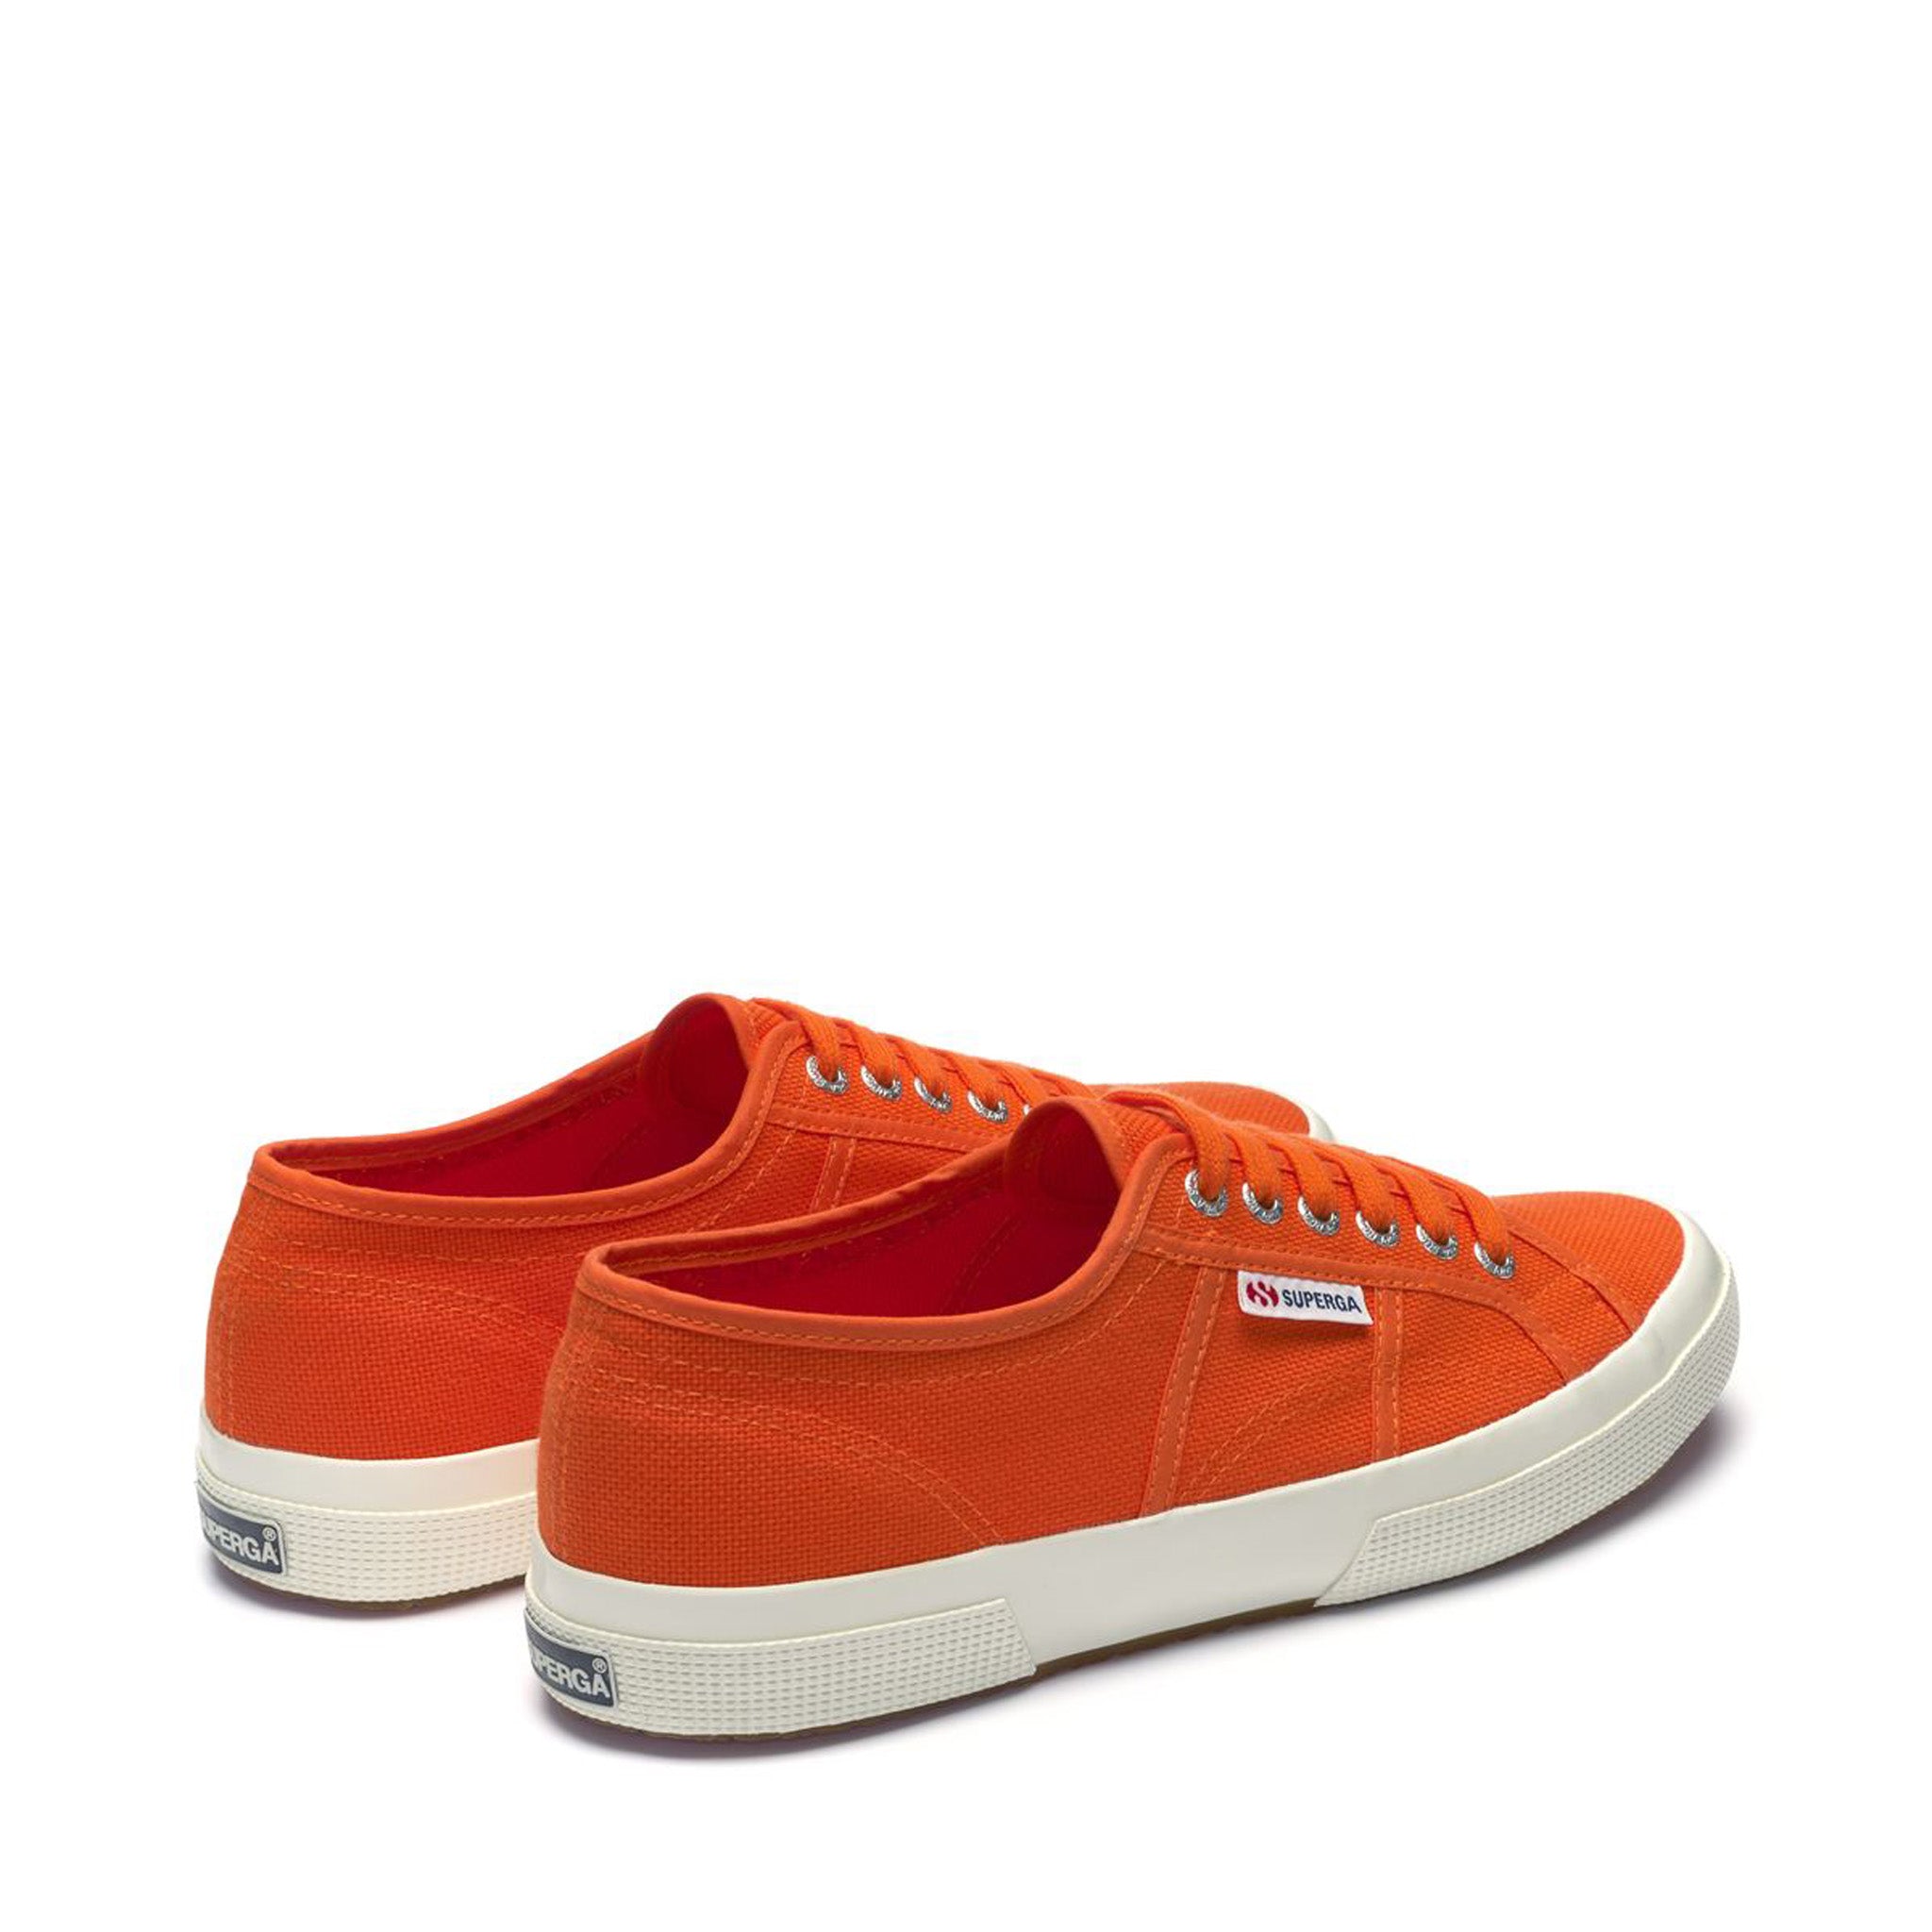 Superga 2750 Cotu Classic Sneakers - Orange Avorio. Back view.